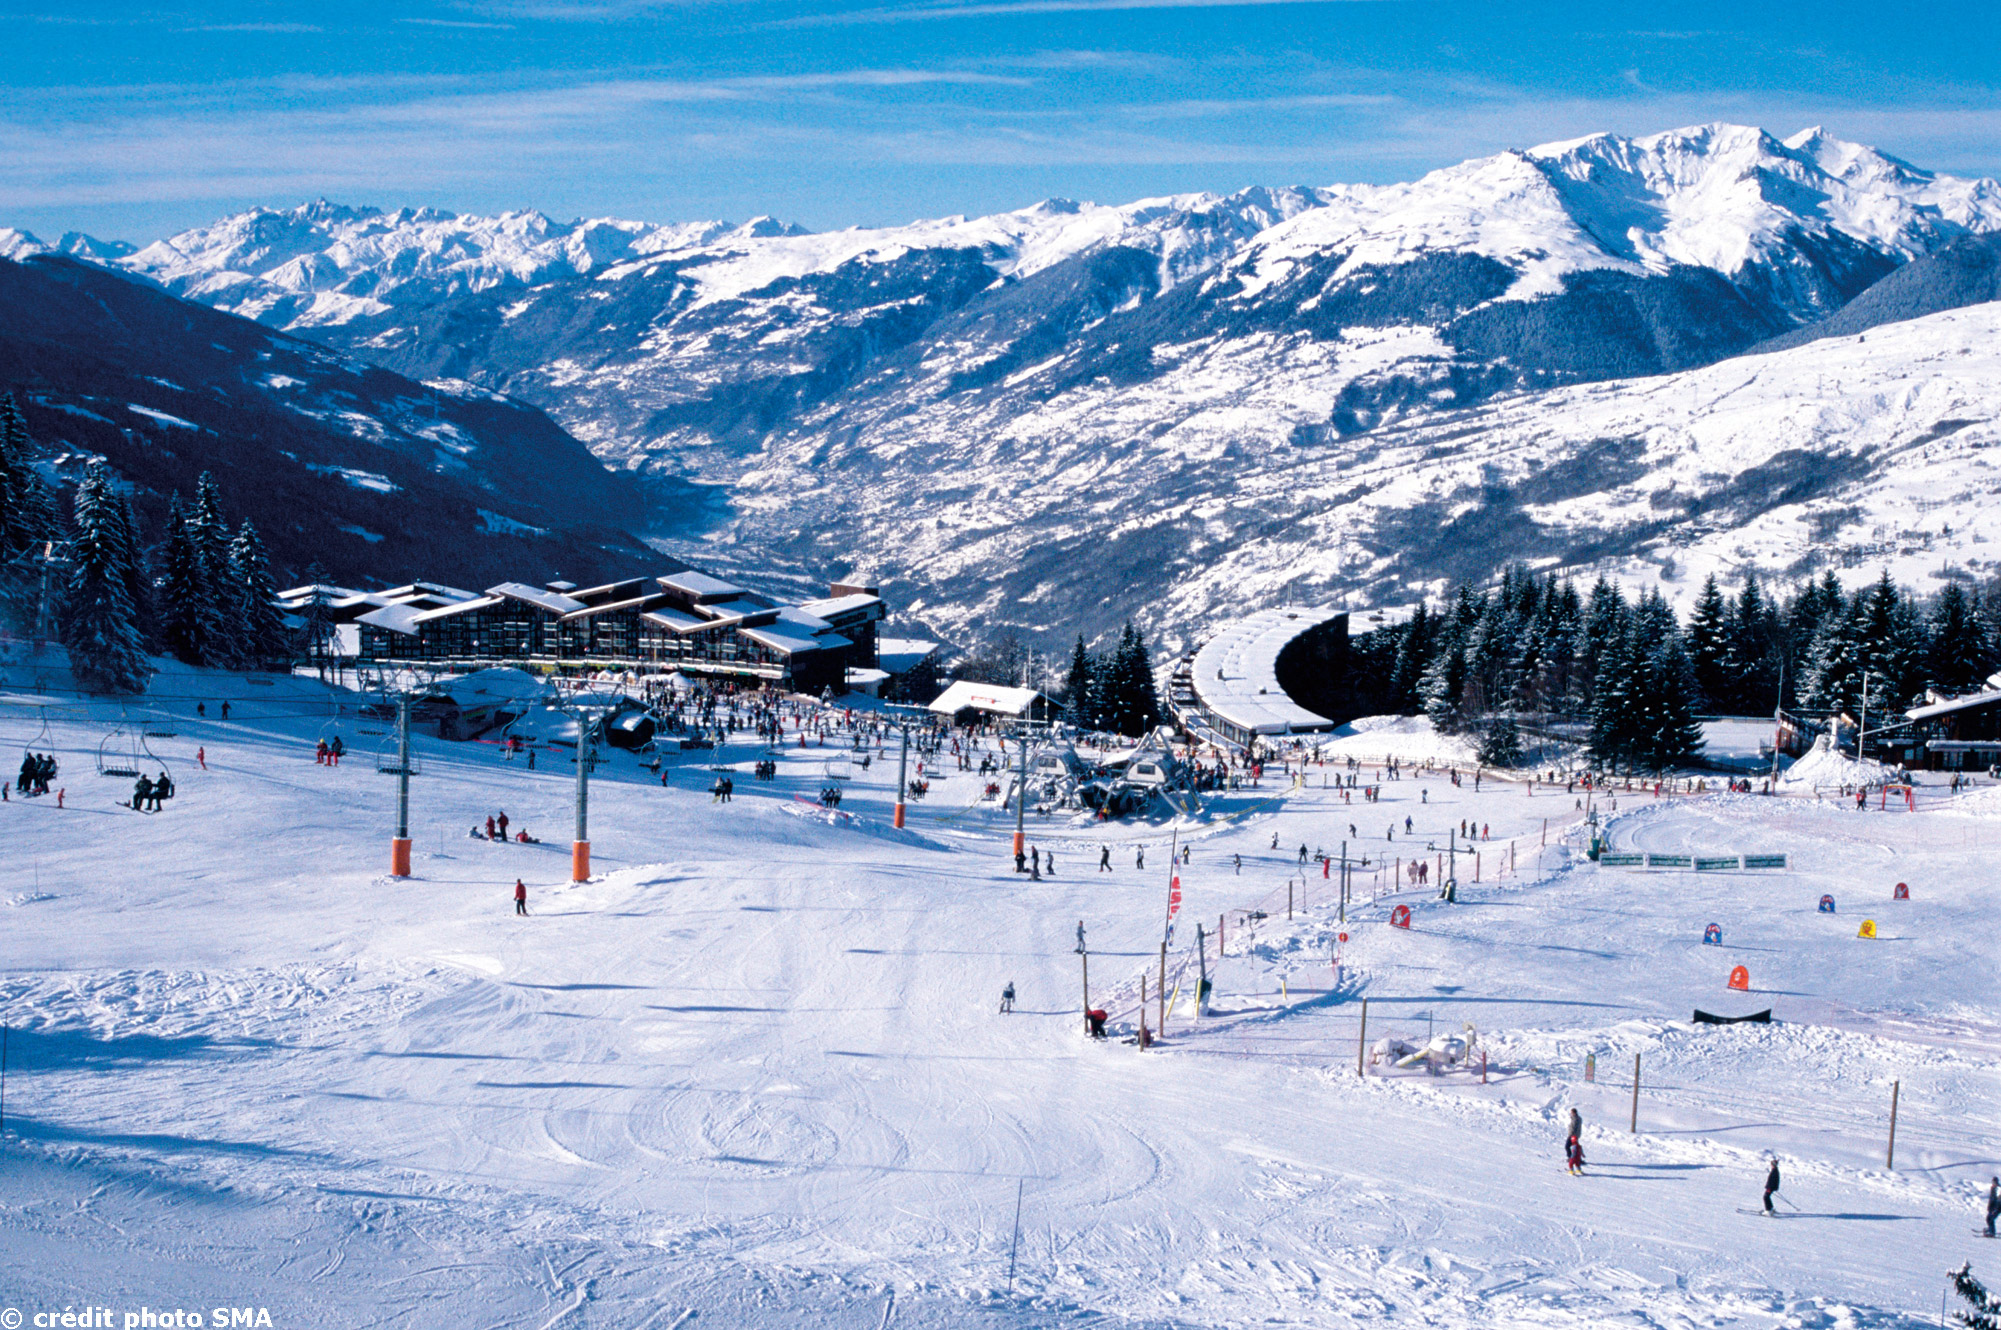 Выбрать горнолыжный курорт. Лез-АРК-ла-Плань (les Arcs la Plagne), Франция. Альпы Франция горнолыжный курорт. Курорты Франции горнолыжные Мэрибель. Лезарк лыжный курорт.